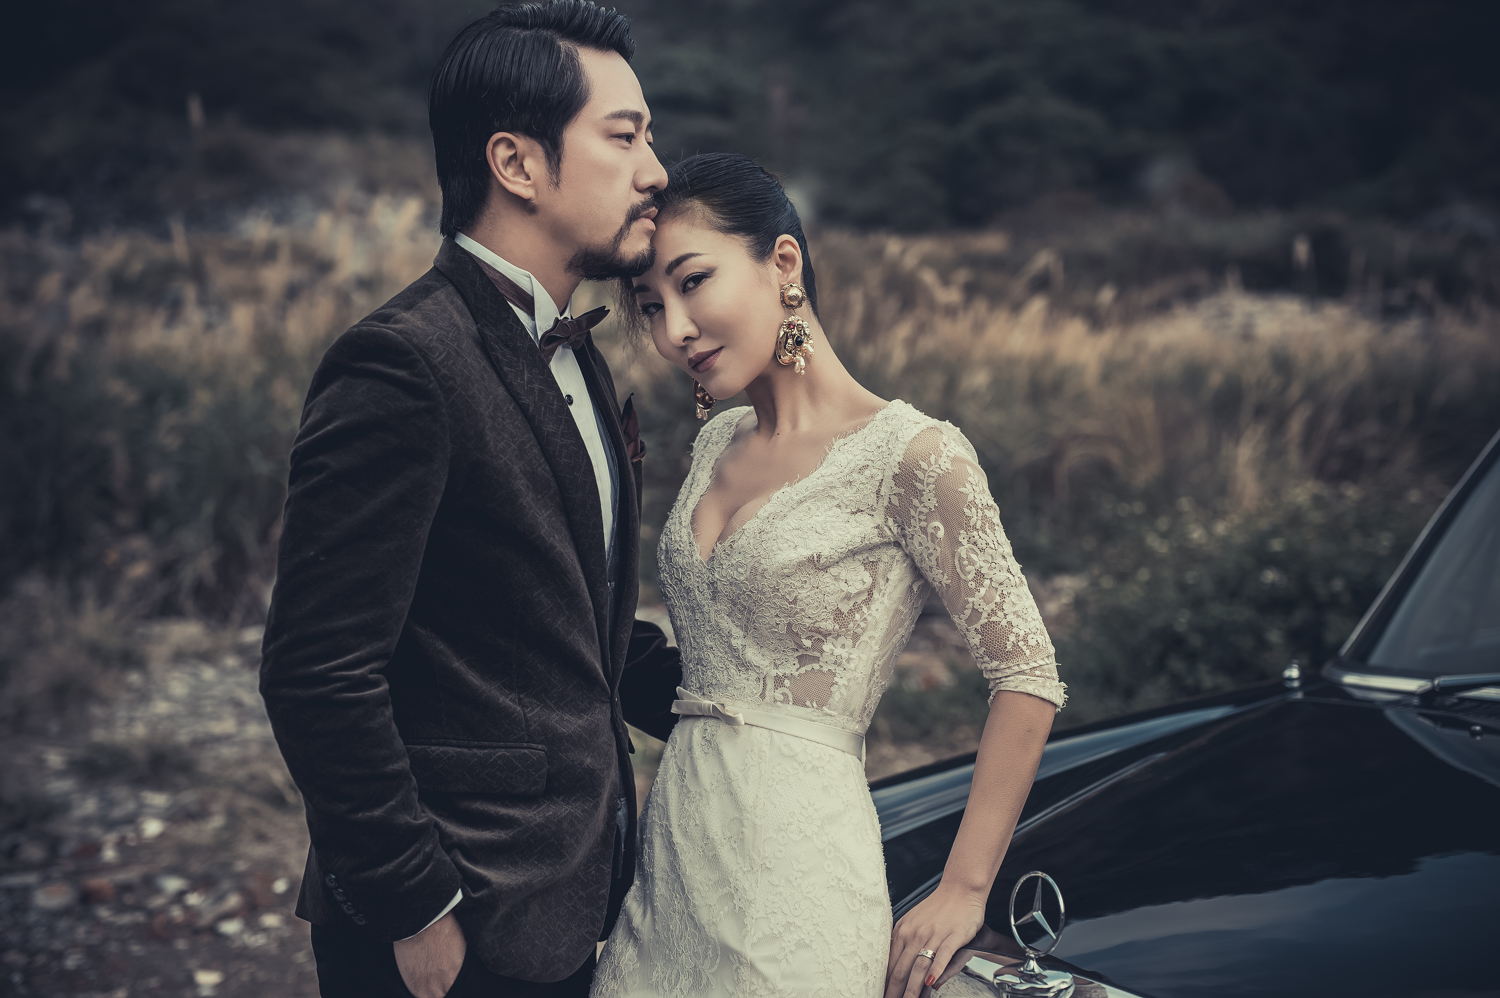 婚紗影像 | 攝影師 Anderson Chien | 婚紗影像 | 自助婚紗 | 婚禮紀實 | 平面攝影 | 婚禮紀錄 | 海外婚紗 | 自主婚紗